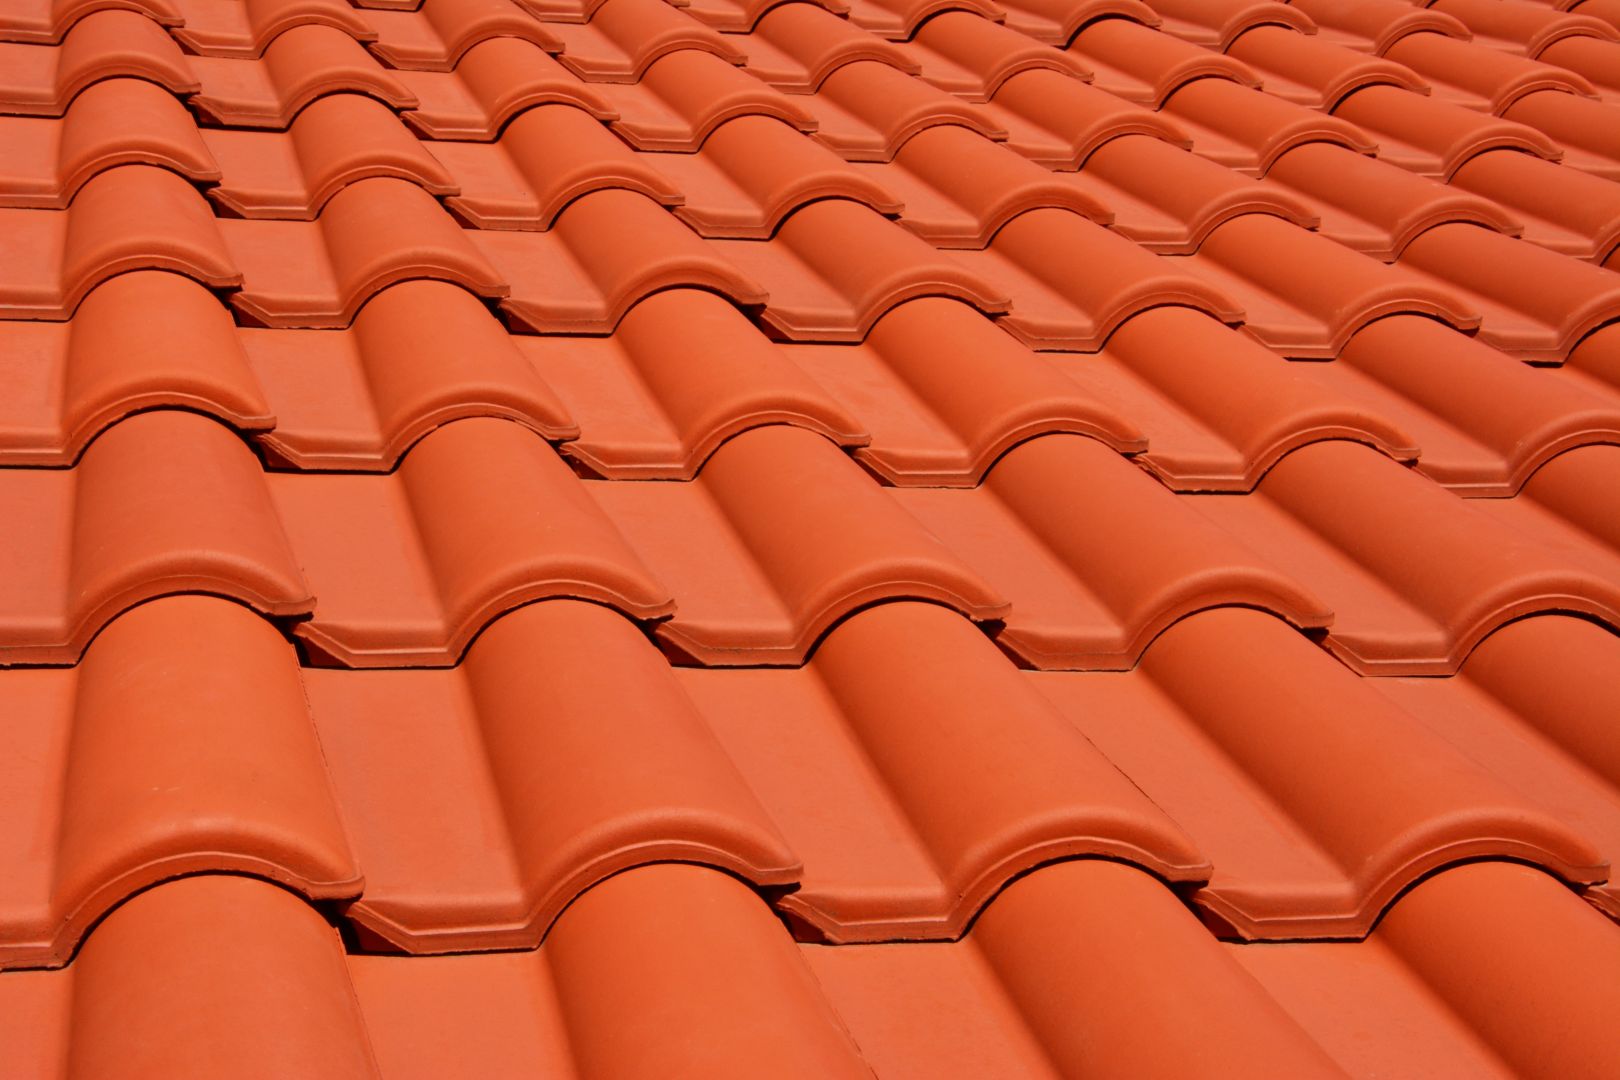 Pokrytí střechy pergoly, 50 m2, Lednice na Moravě